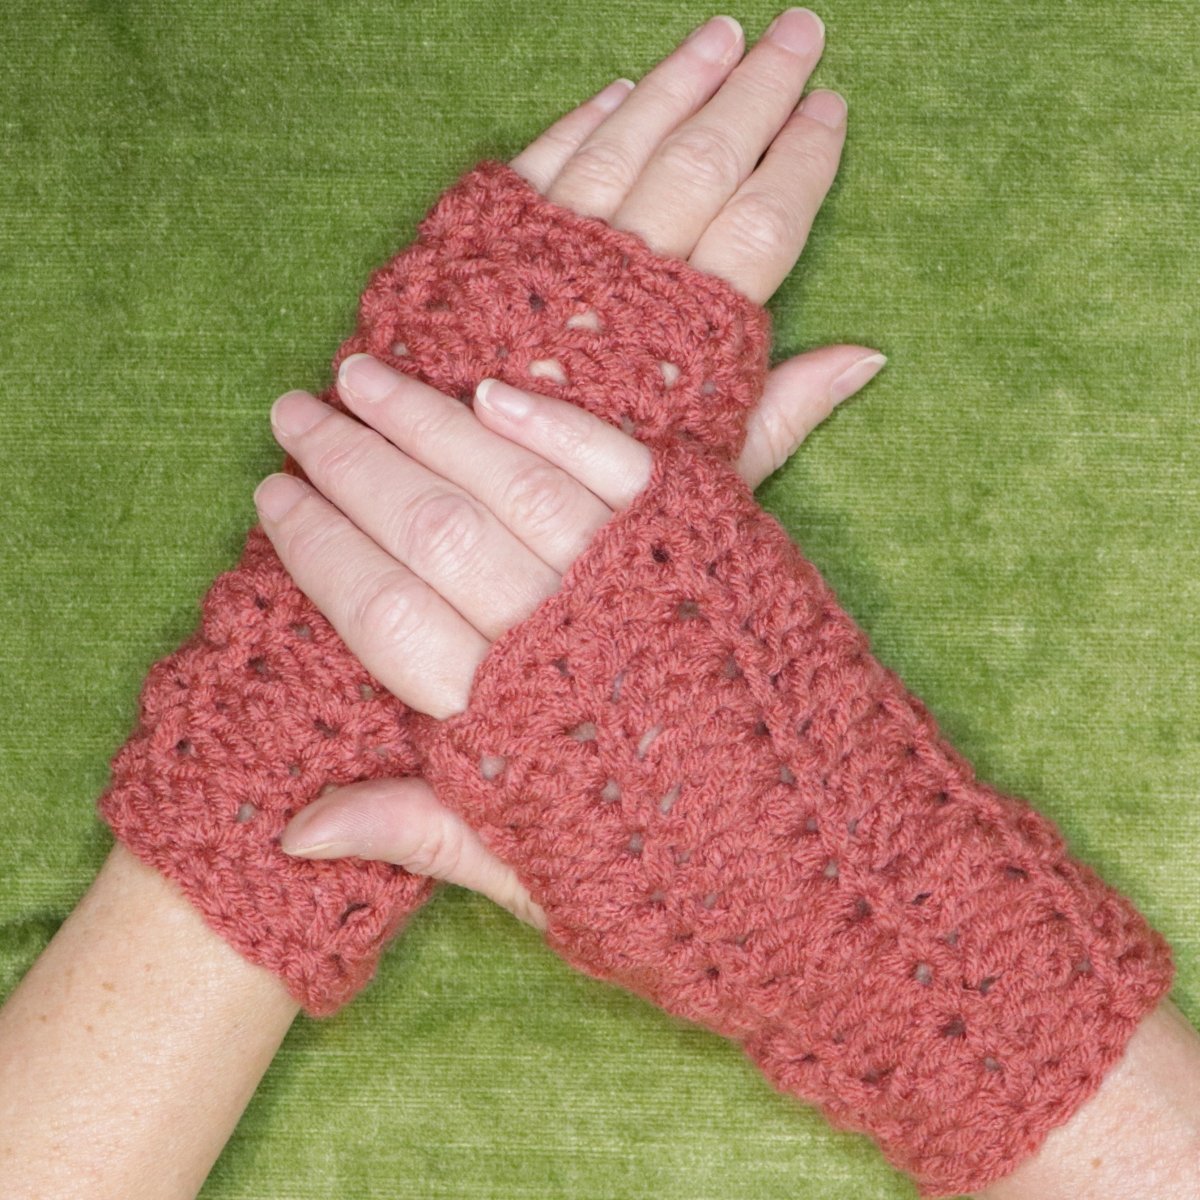 Simple DIY Fingerless Crochet Gloves Pattern - The Secret Yarnery